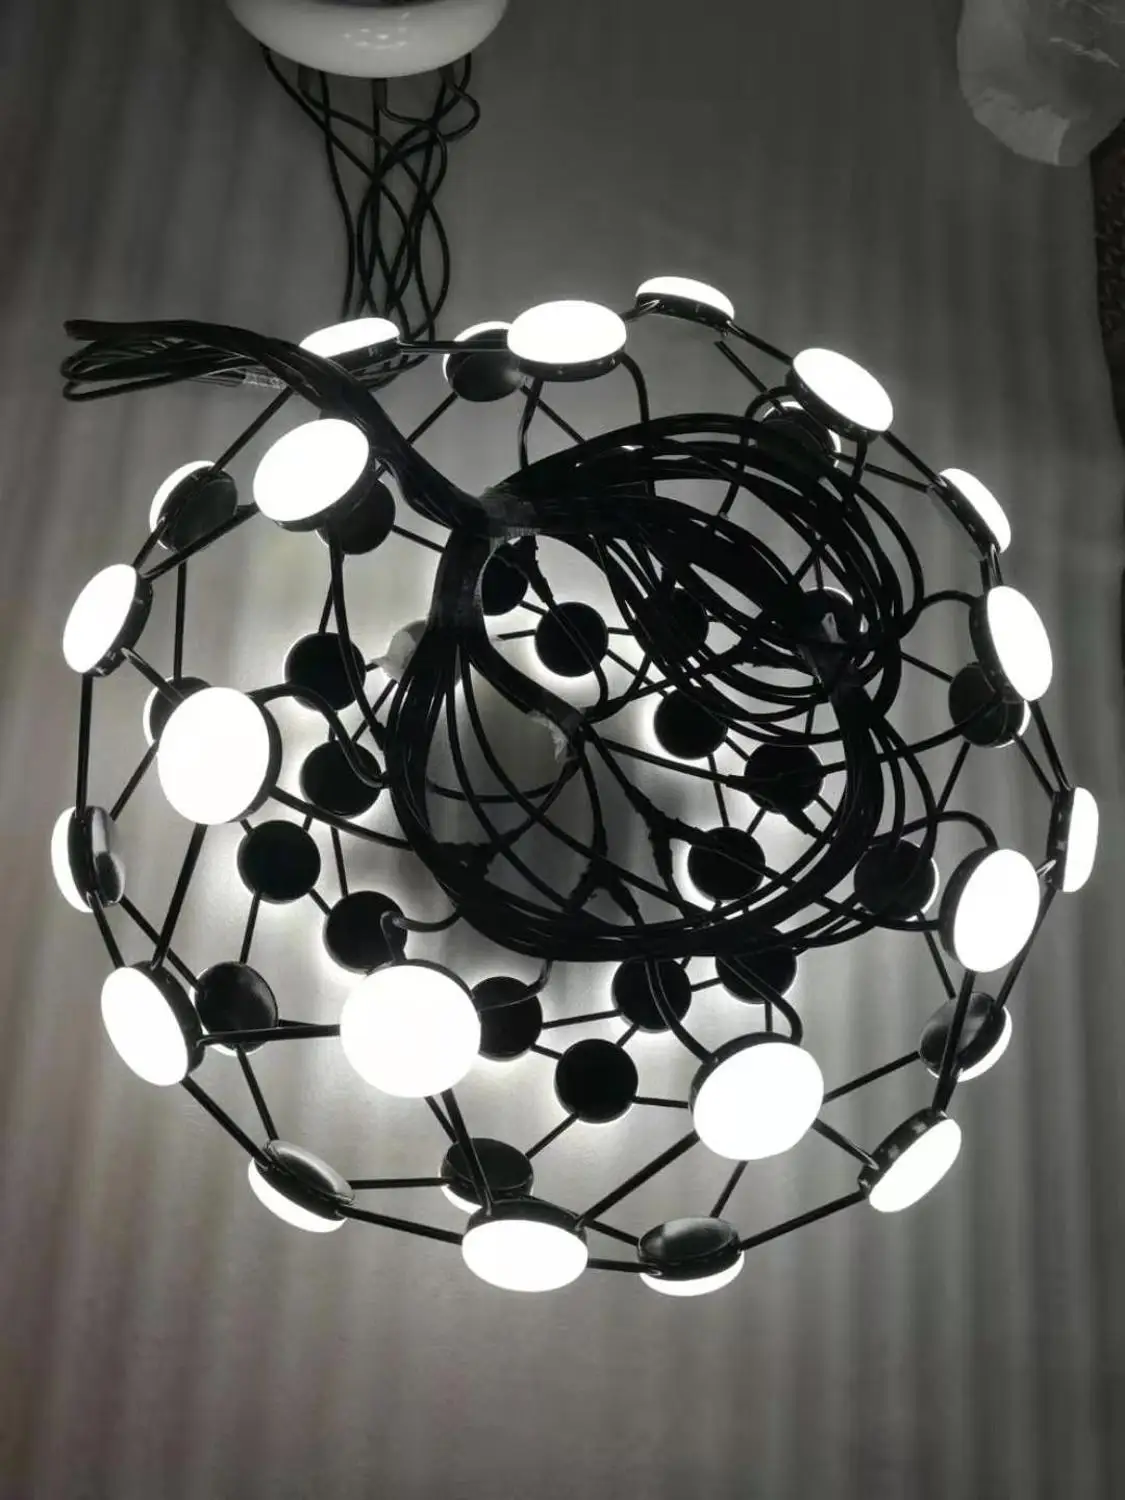 Скандинавский креативный подвесной светильник s Art светодиодный сетчатый подвесной светильник для гостиной, кухни, светильник, светильники, промышленный домашний декор, светильник